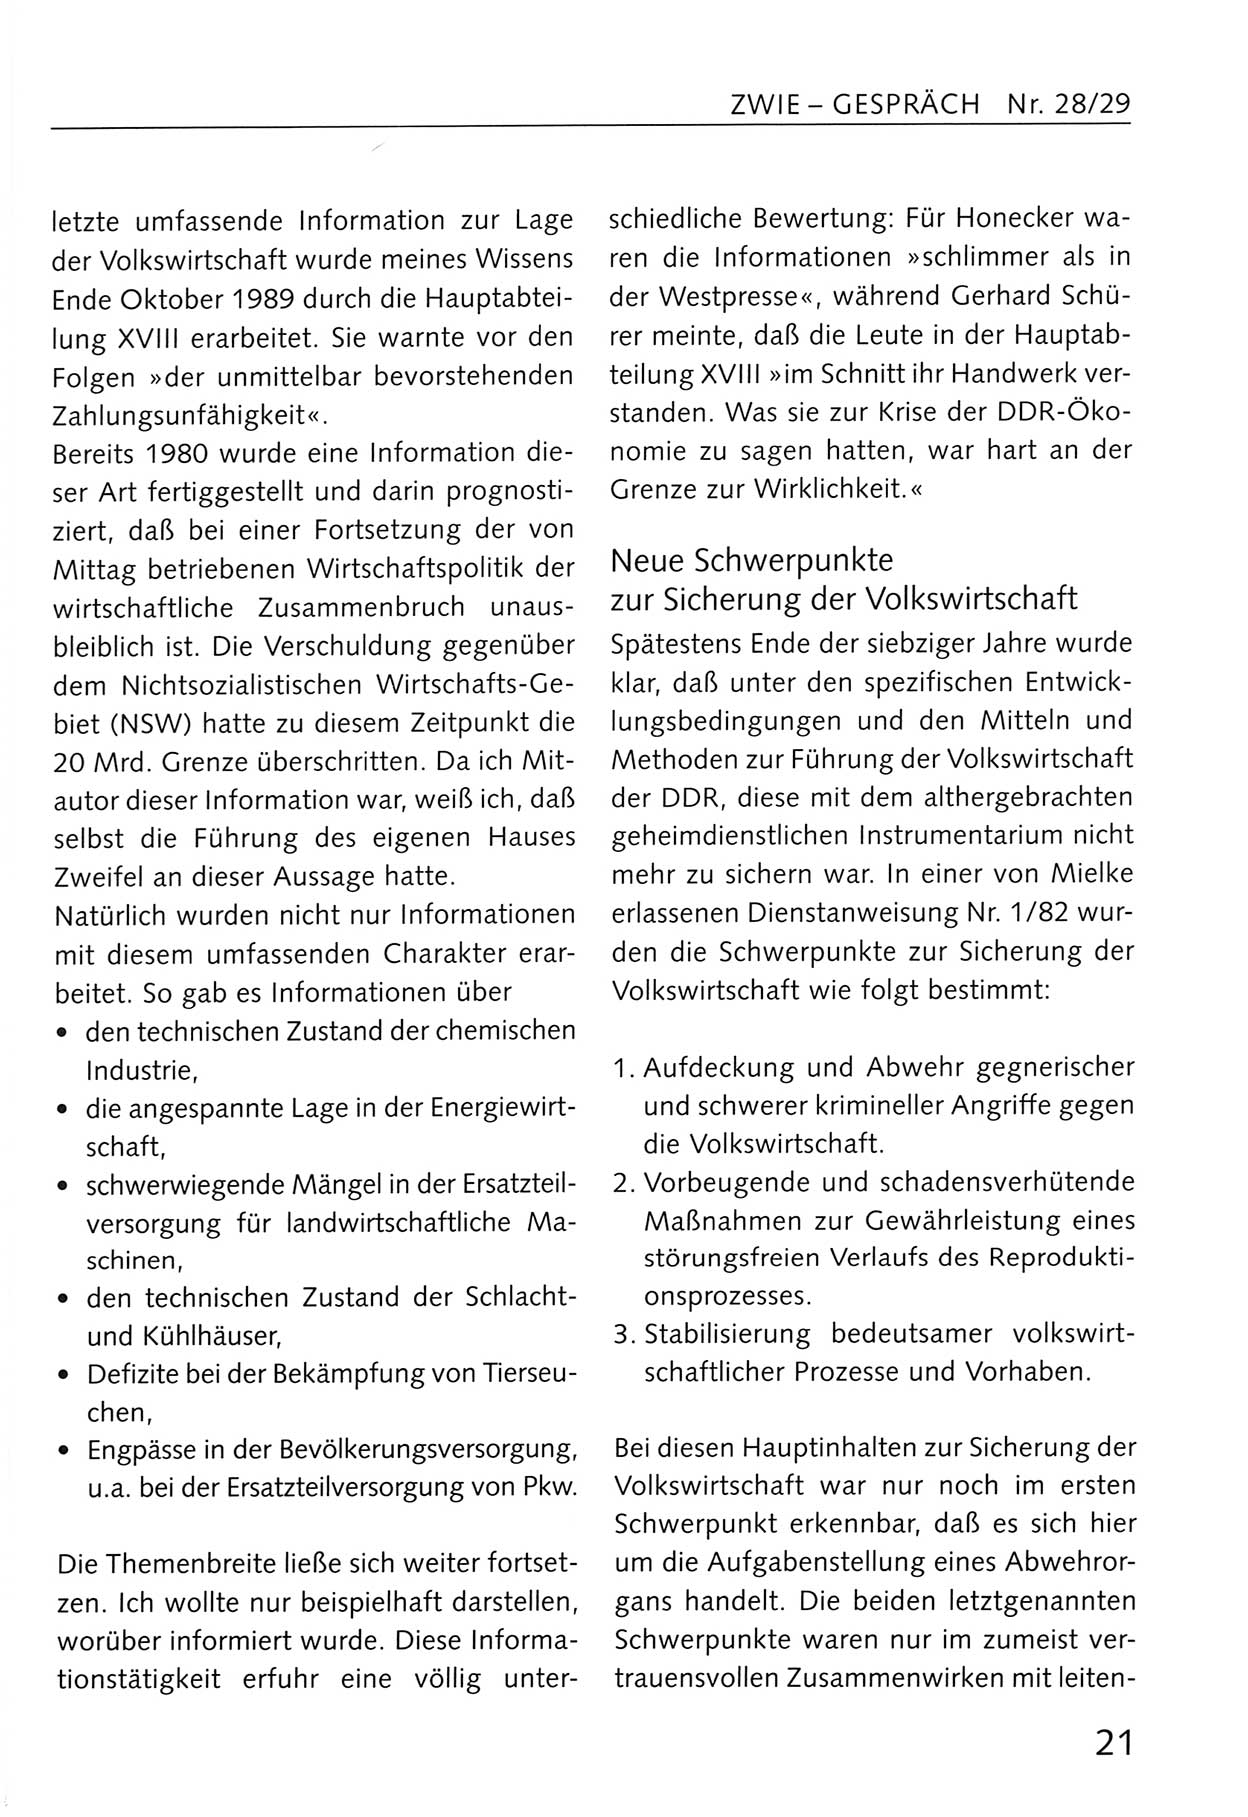 Zwie-Gespräch, Beiträge zum Umgang mit der Staatssicherheits-Vergangenheit [Deutsche Demokratische Republik (DDR)], Ausgabe Nr. 28/29, Berlin 1995, Seite 21 (Zwie-Gespr. Ausg. 28/29 1995, S. 21)